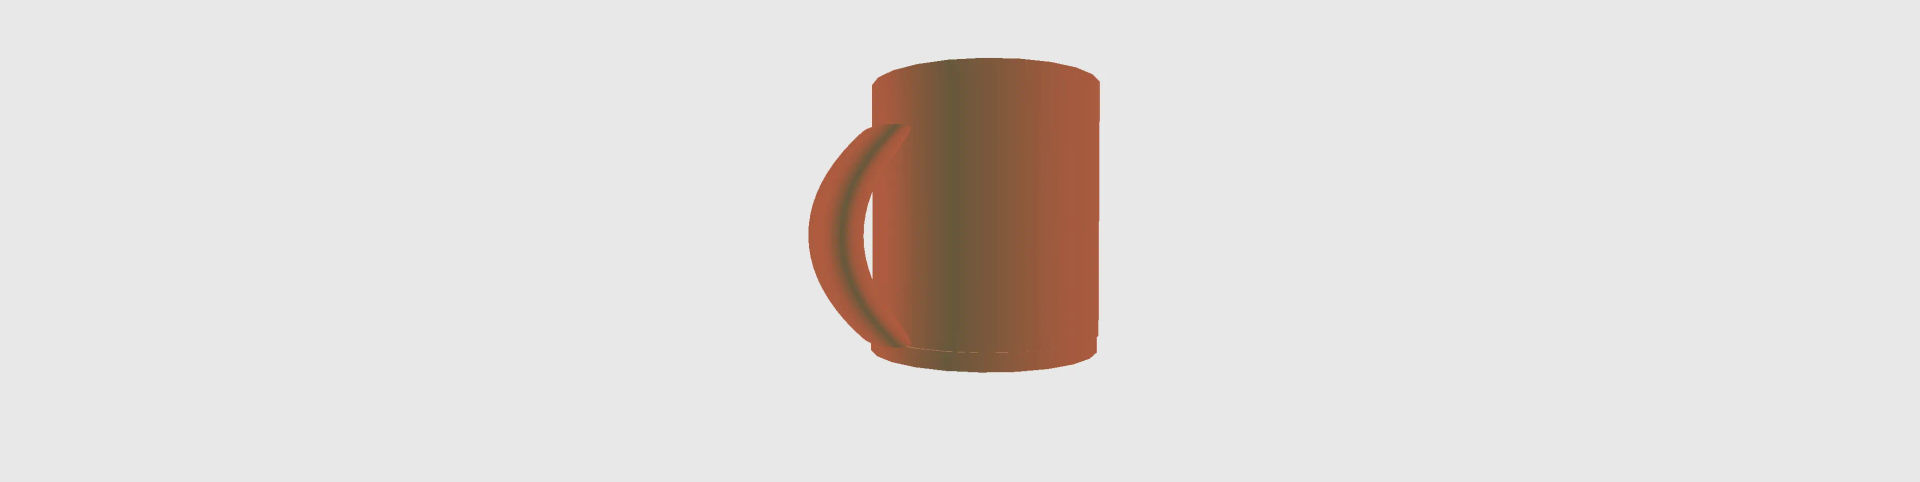 mug 1.fbx